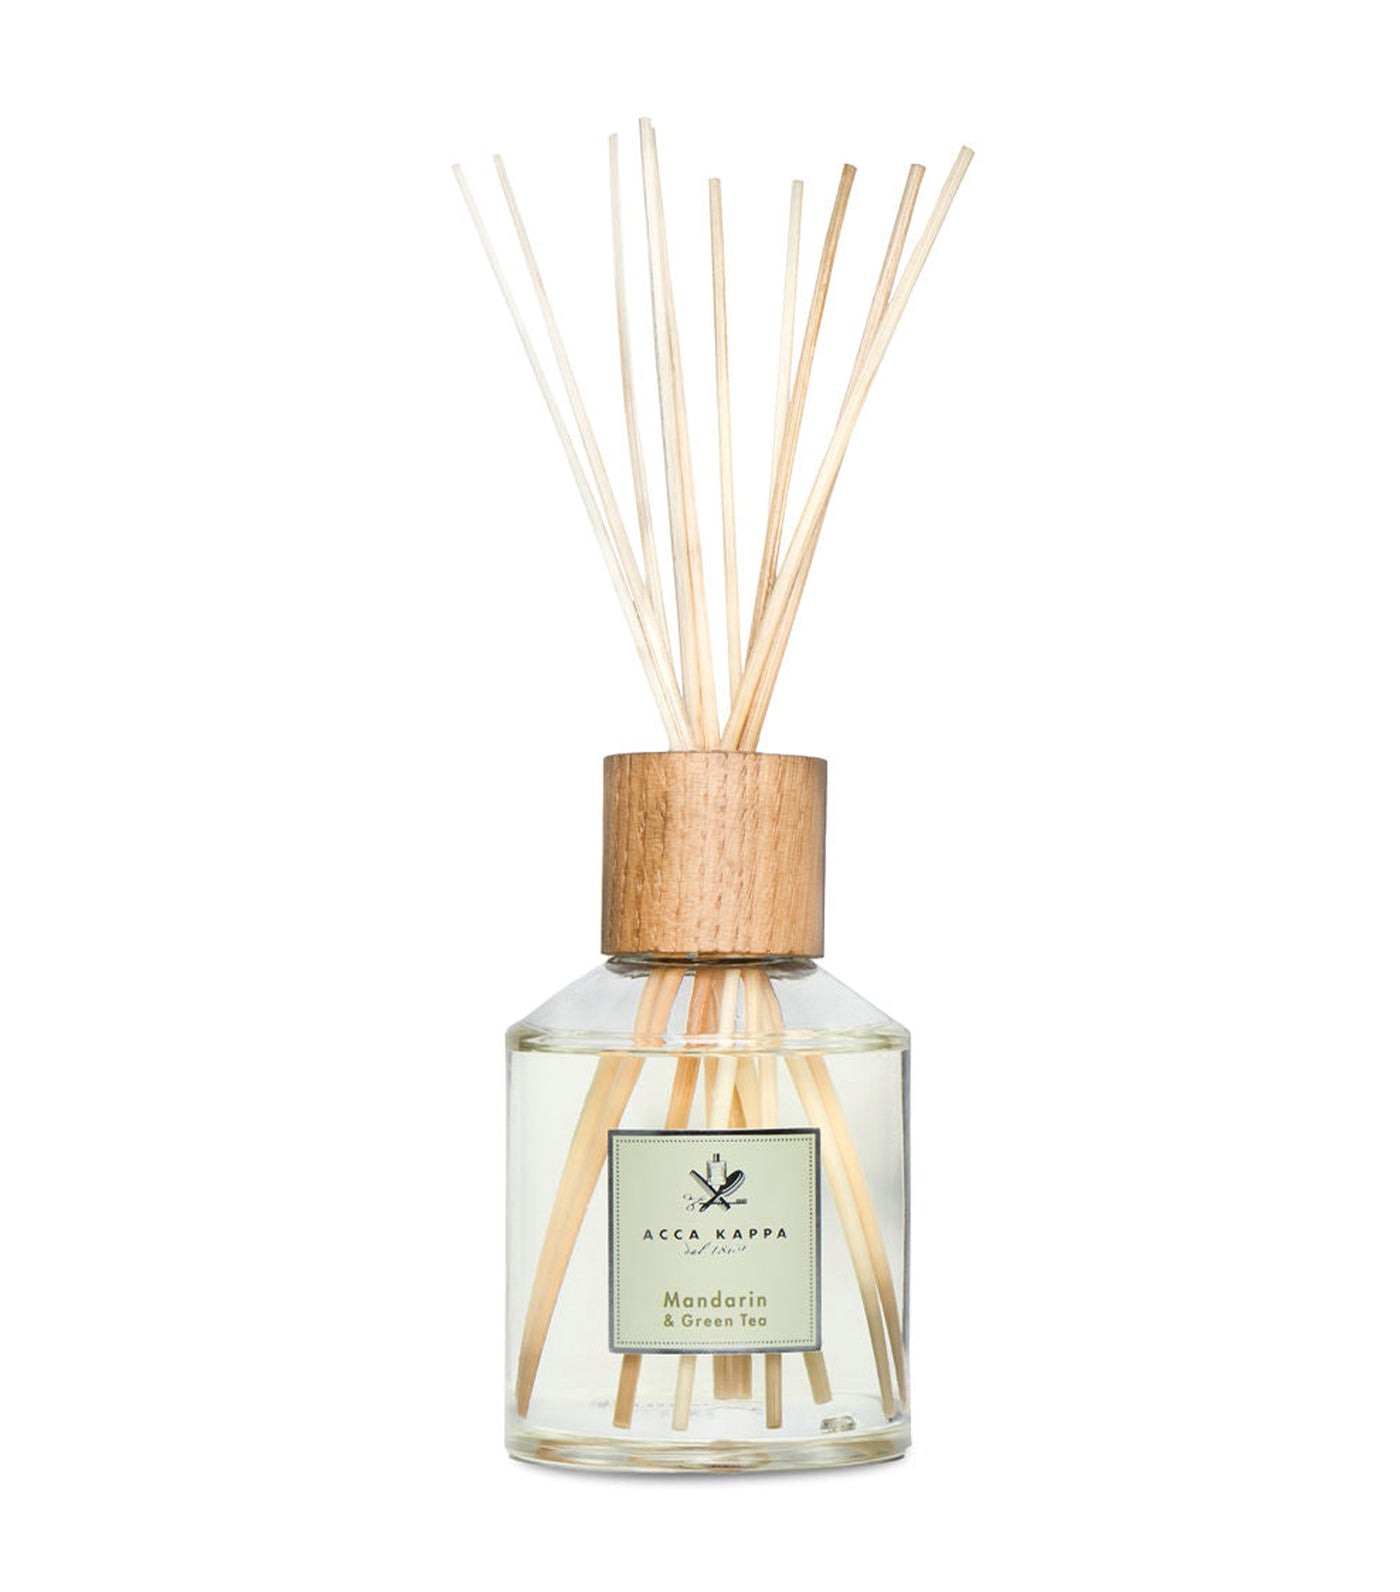 Parfum lavant Amarasico Fleur de pêcher - 100 ml - Cire fraîche - Parfum  merveilleux 